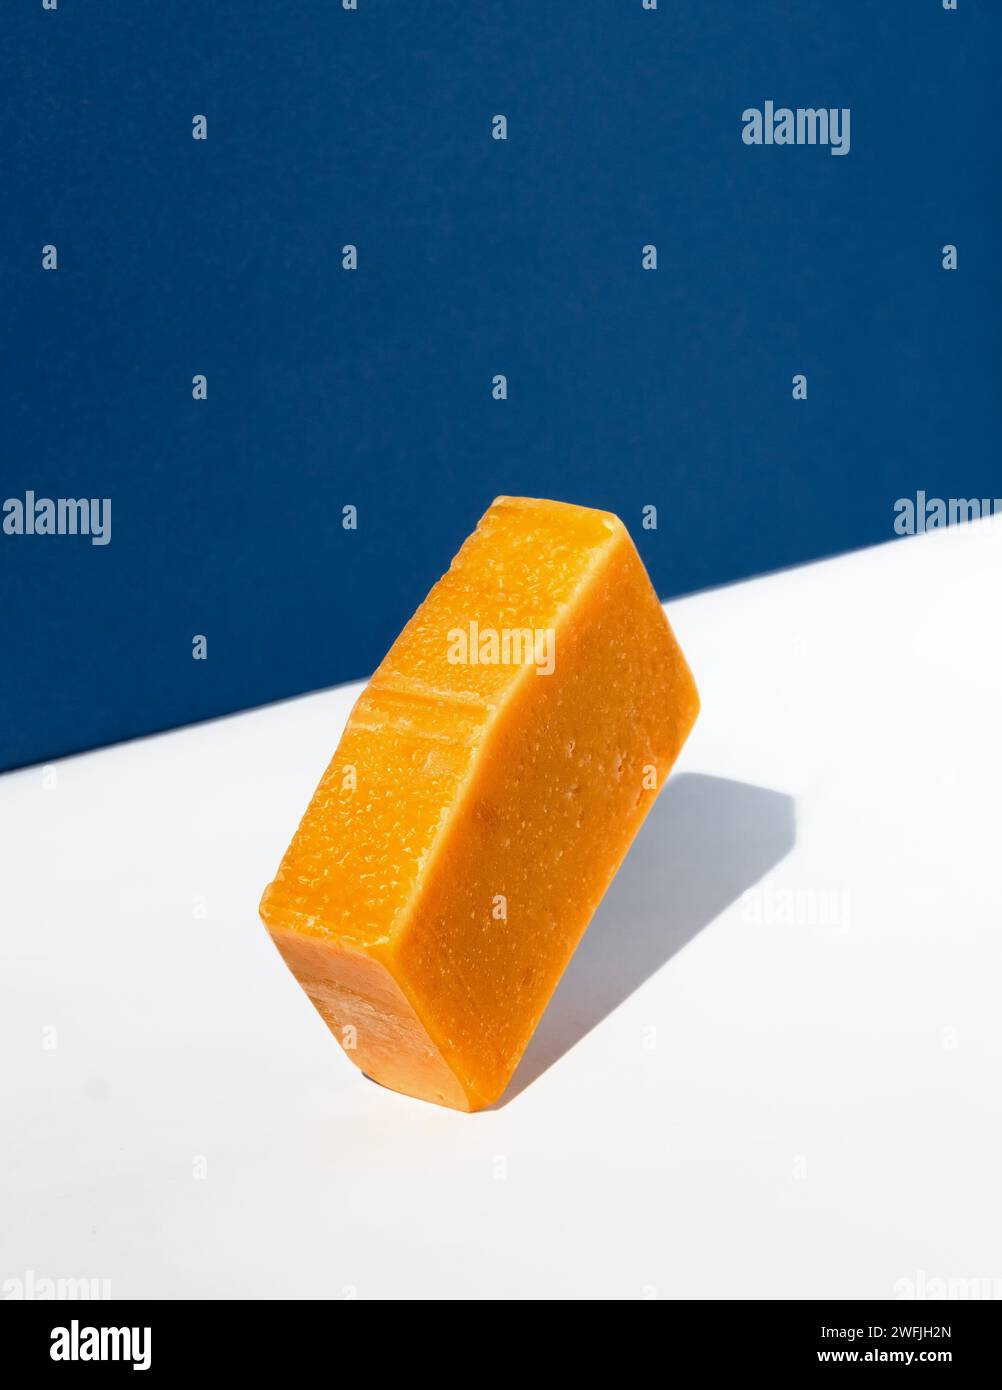 Orangefarbene Seifenleiste auf weiß-blauem Hintergrund. Kreatives Konzept der handgemachten Kosmetik aus Naturprodukten. Stockfoto